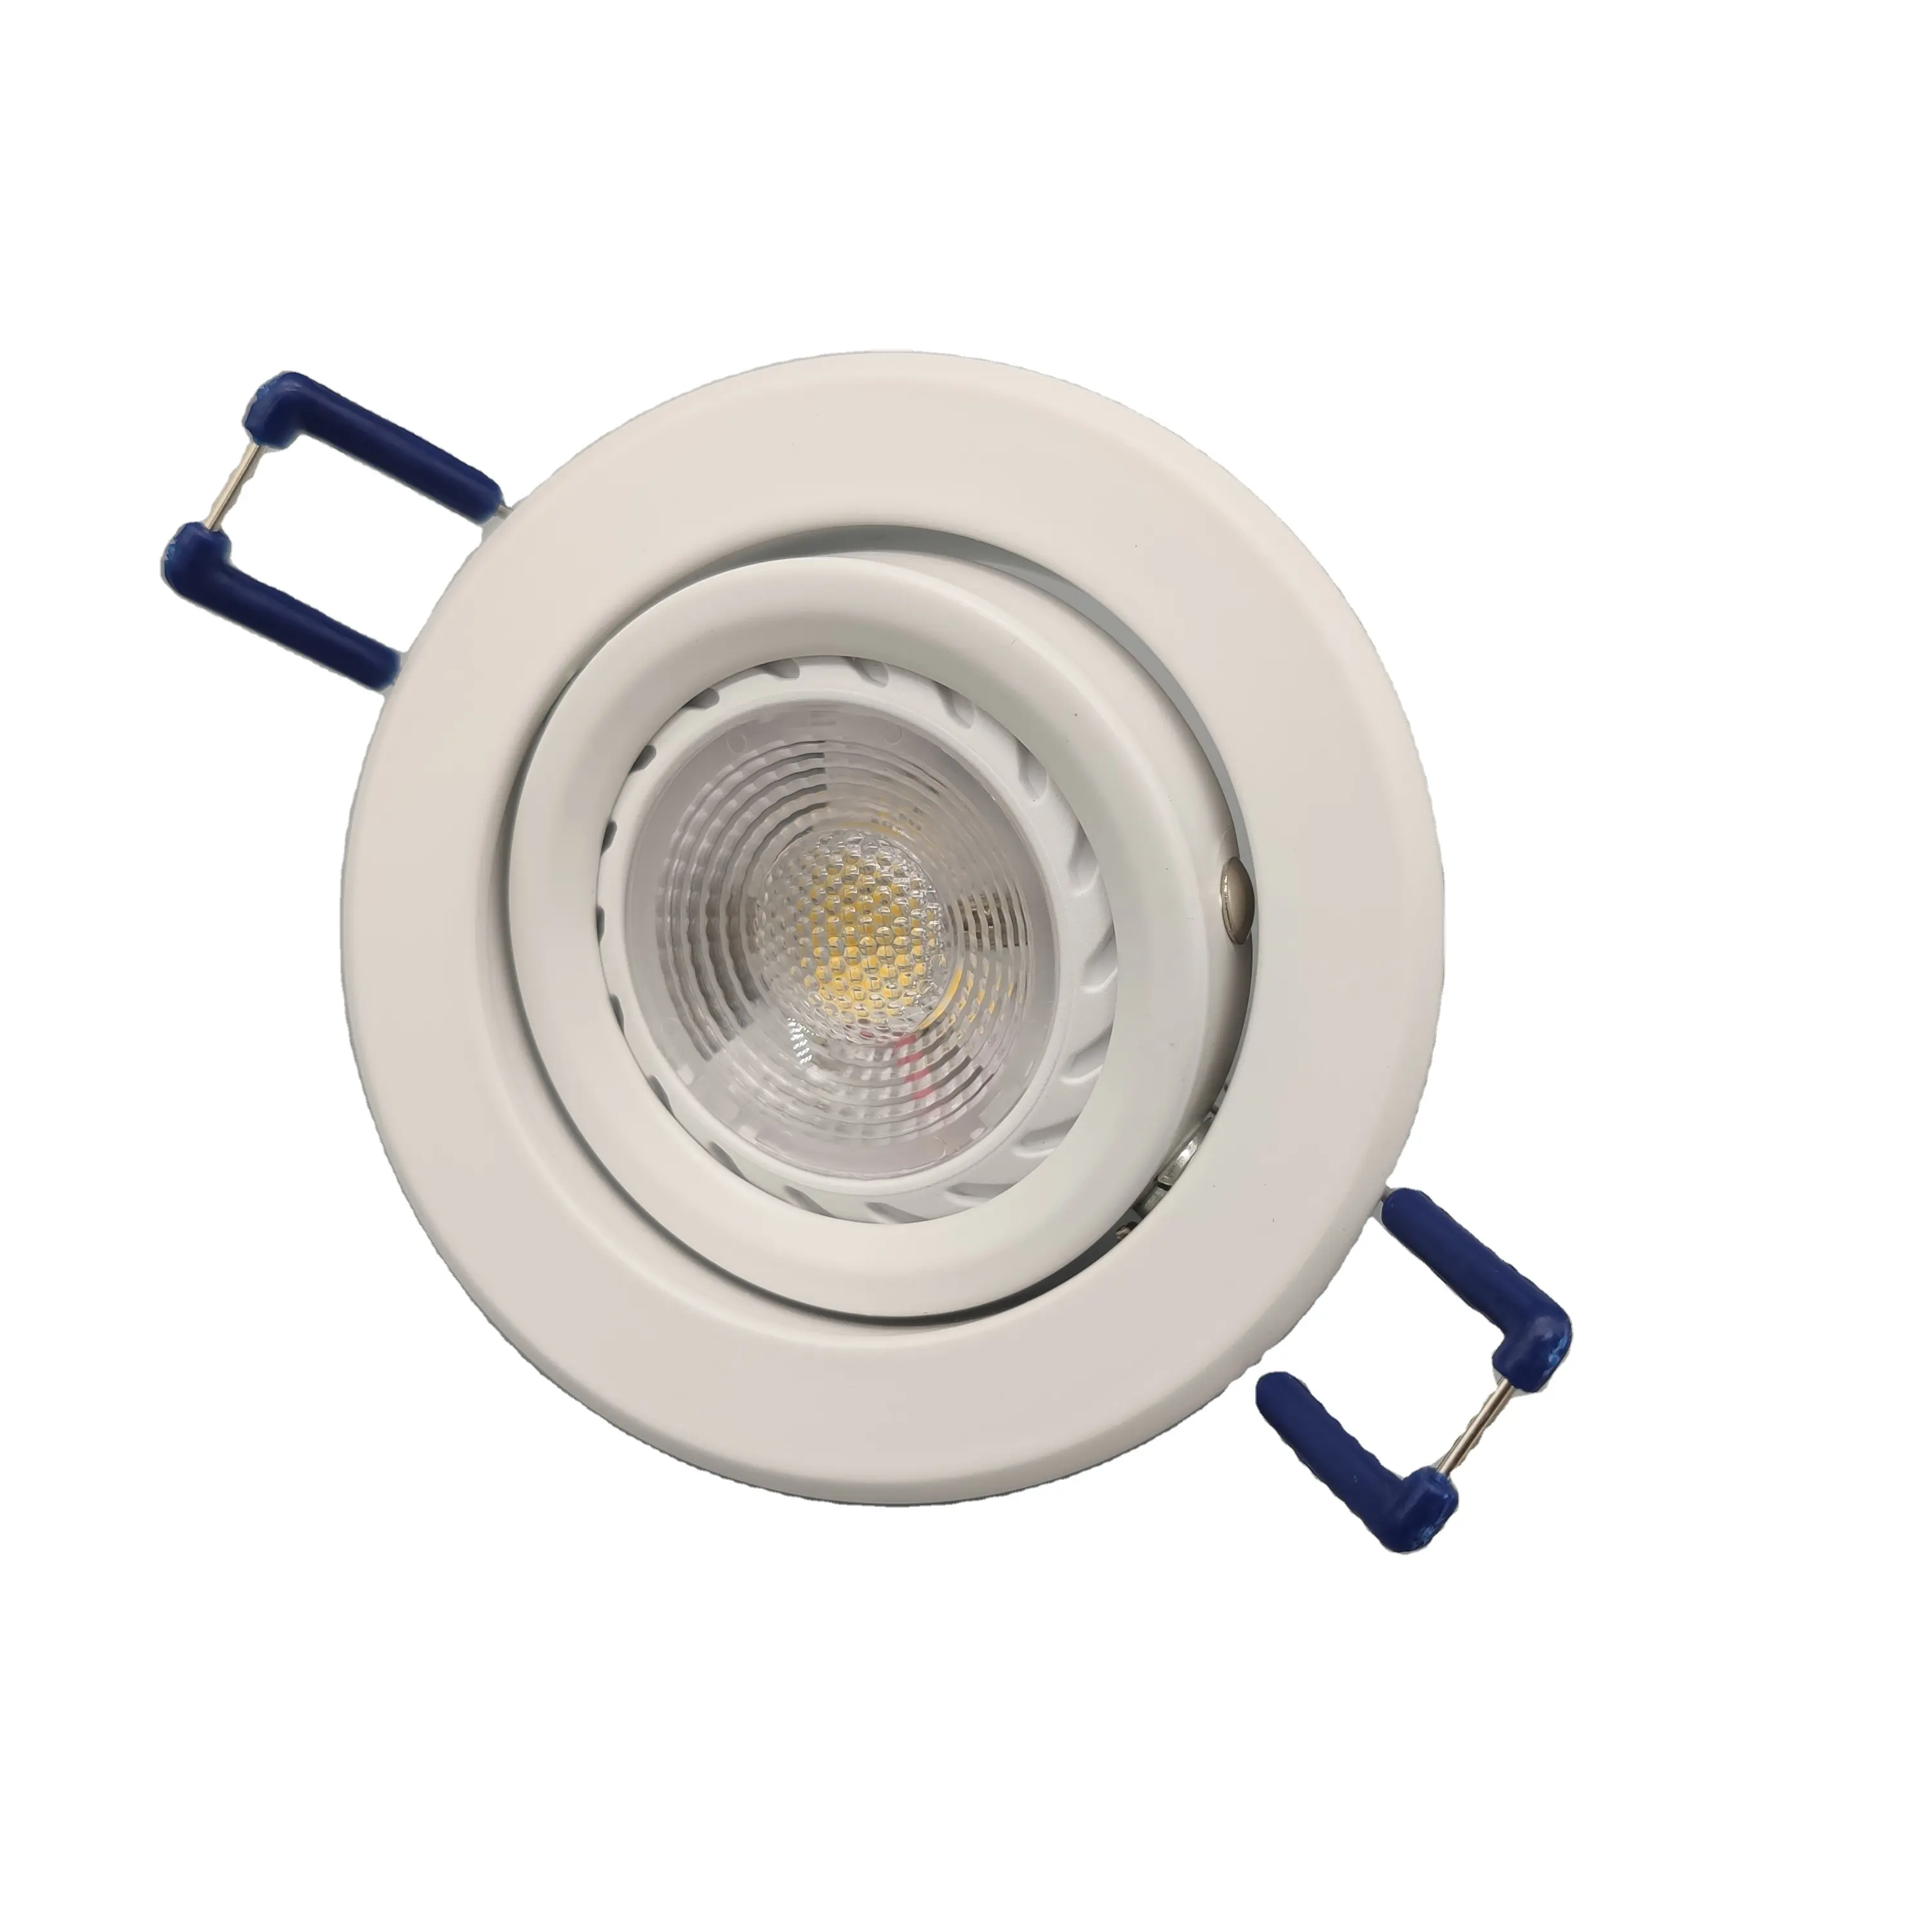 Hot sells ceiling spot light fittings, gu10 24v led spot light fixture mr16 spotlight